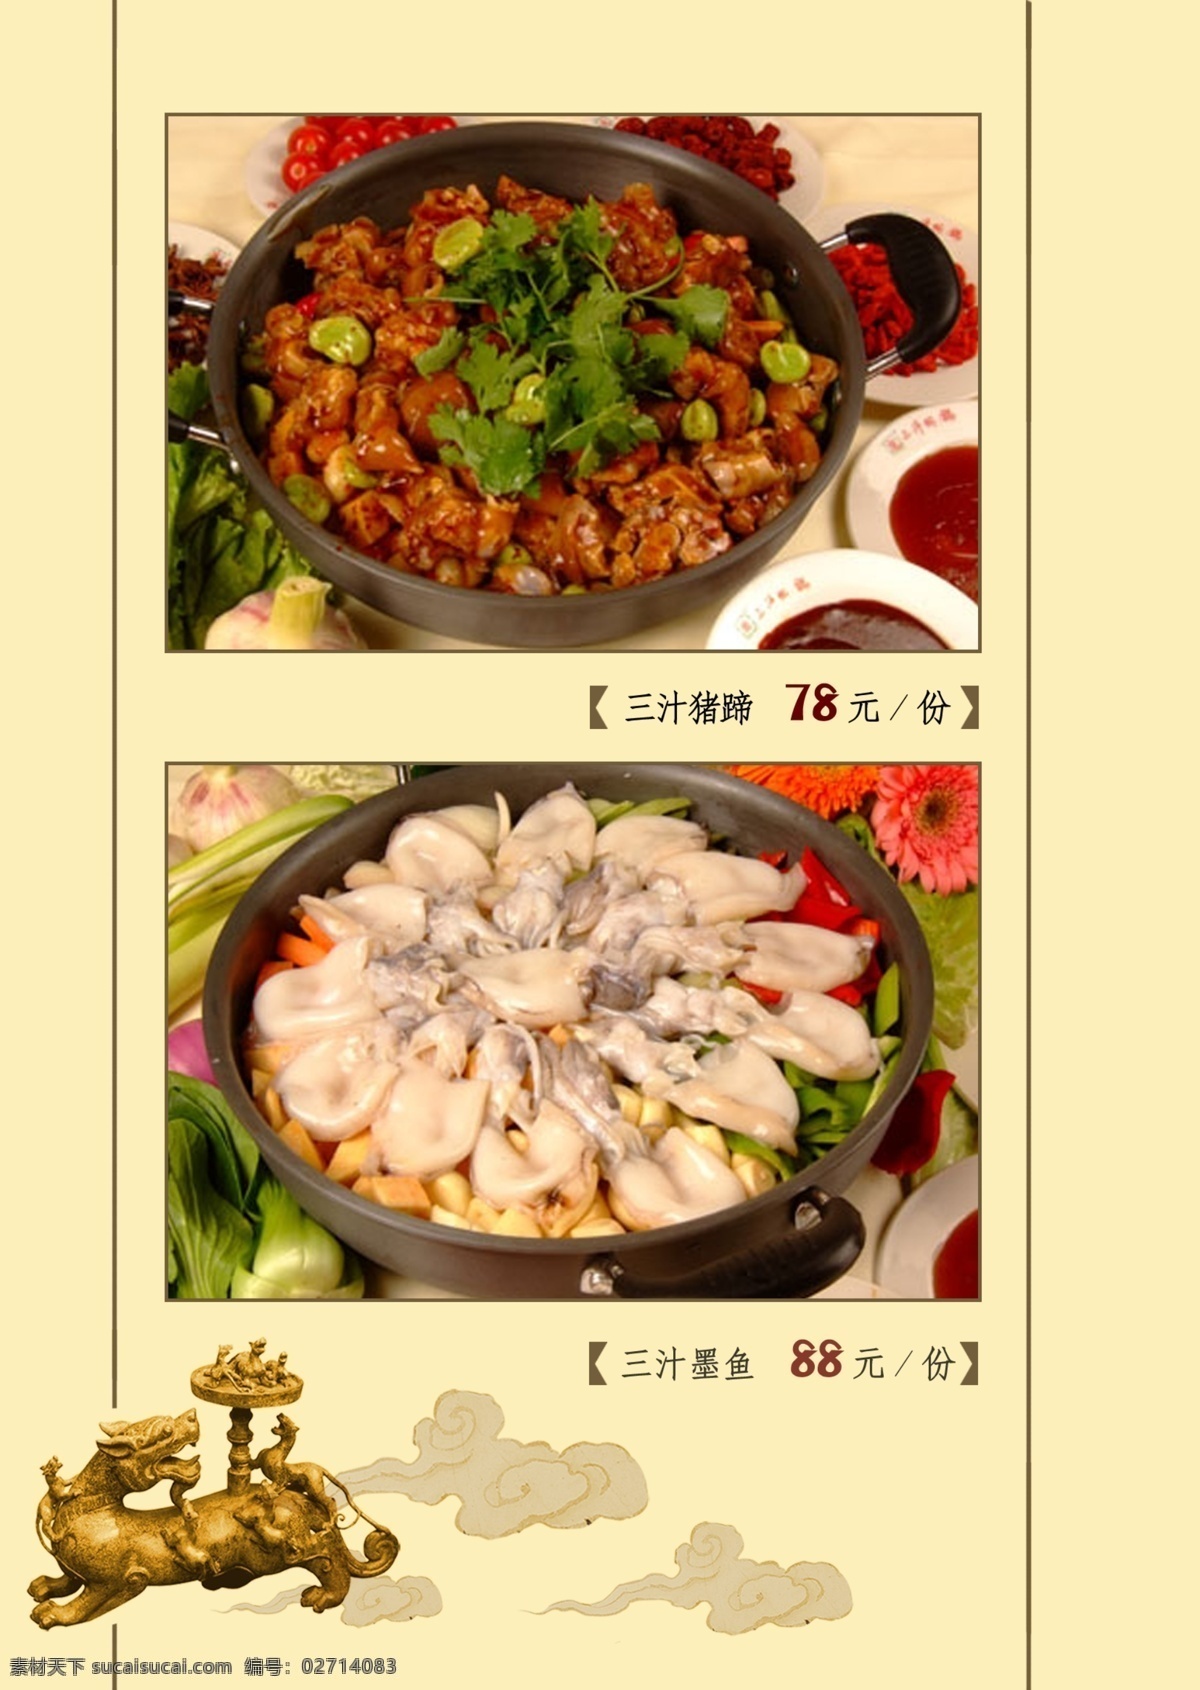 中餐 菜谱 背景 中国风 底纹 纹样 焖锅 墨鱼 羊肉 菜单菜谱 广告设计模板 源文件